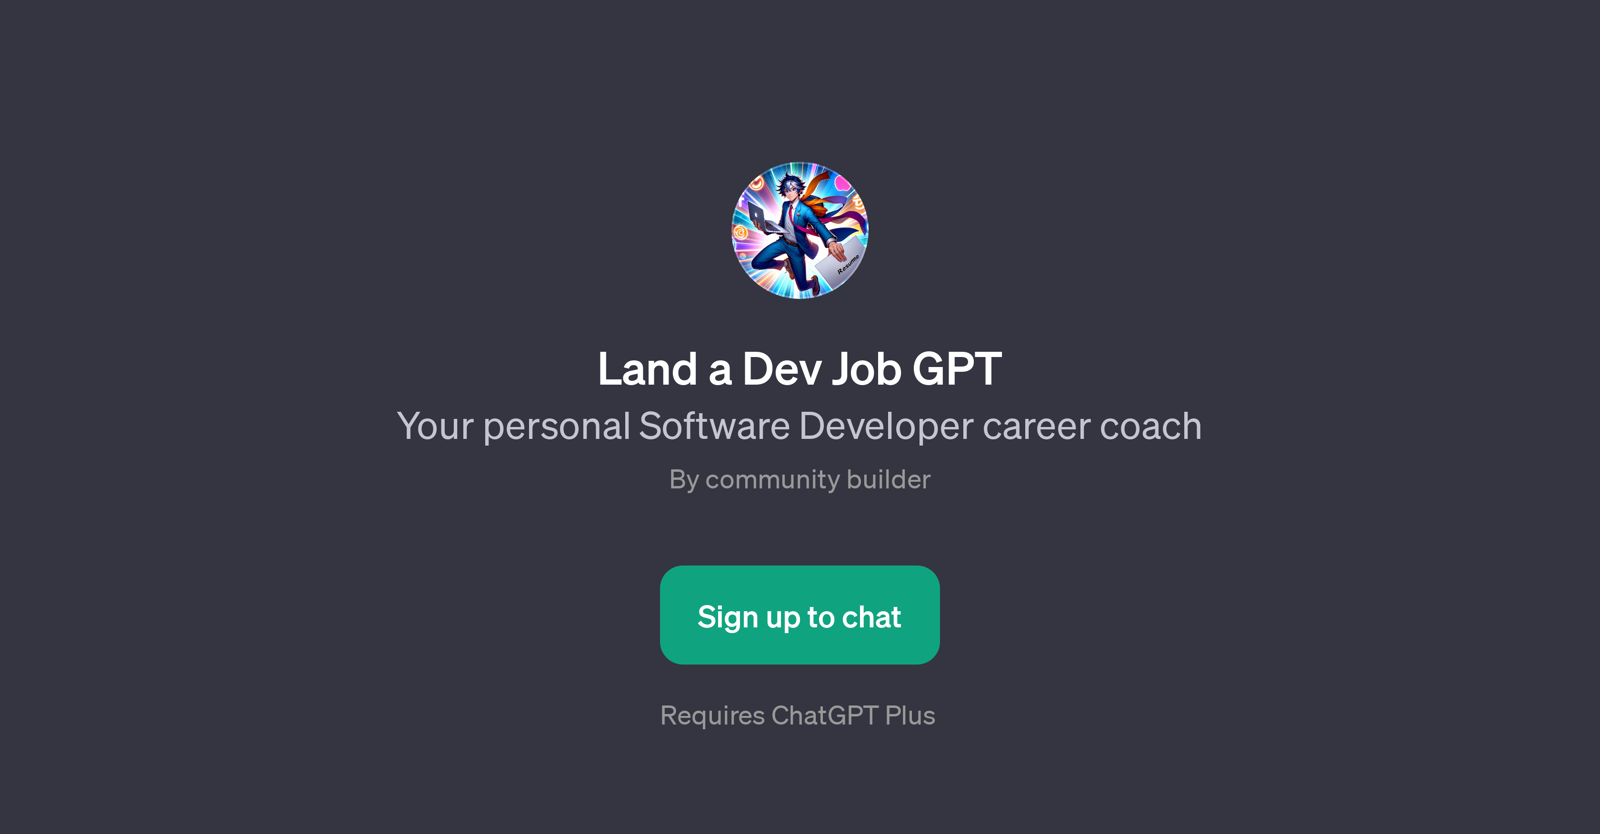 Land a Dev Job GPT website